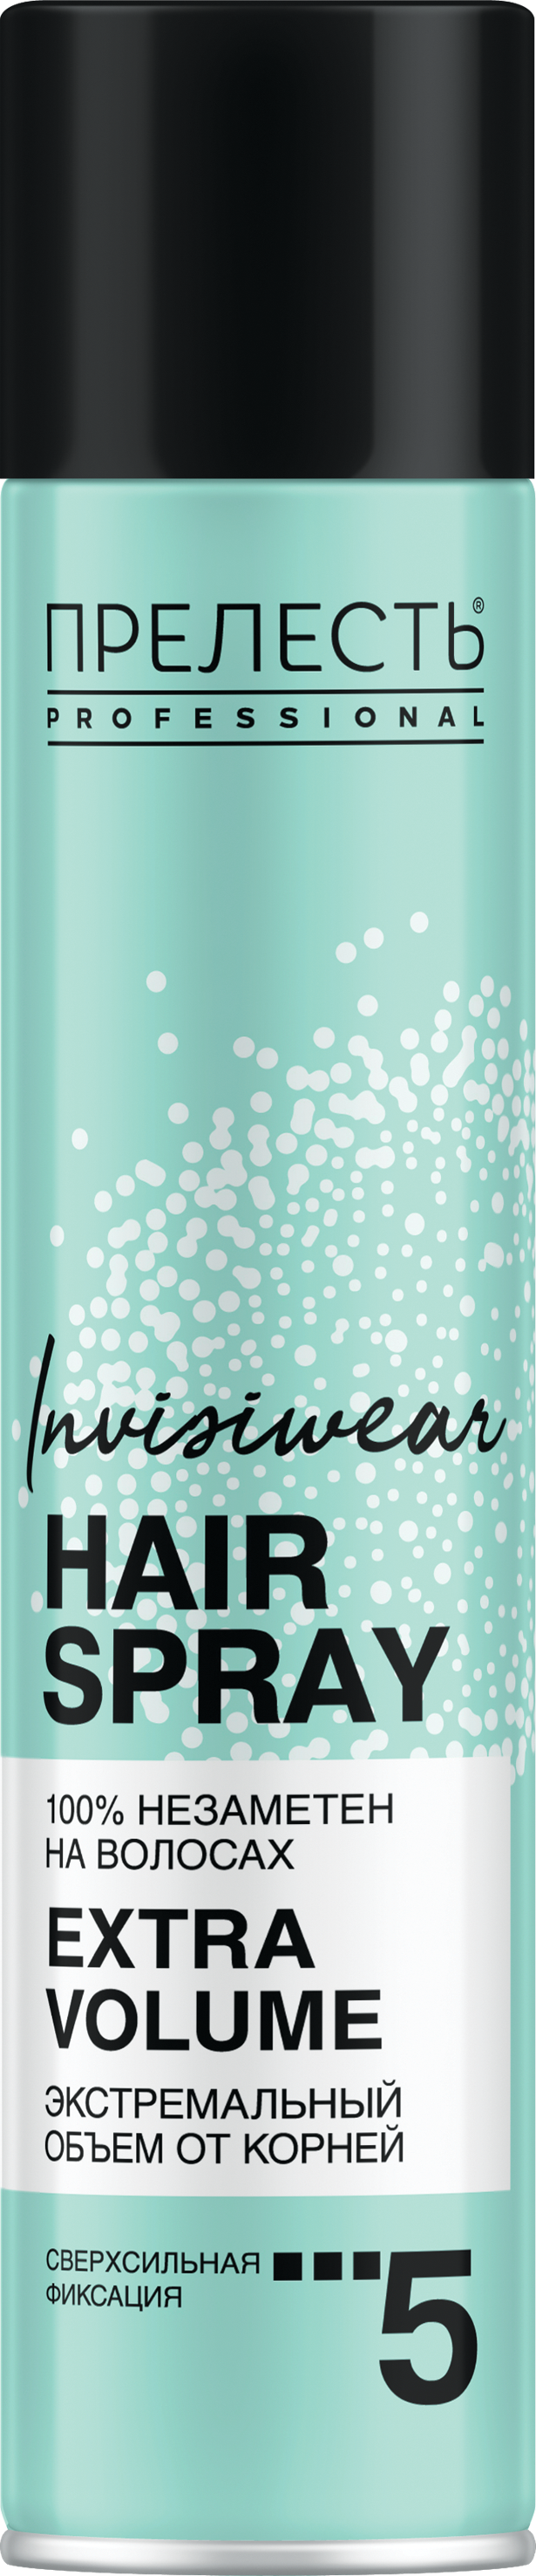 ультралегкий сухой лак для волос shaper zero gravity Лак для волос Прелесть Invisiwear Невесомый, экстремальный объем, 300 мл